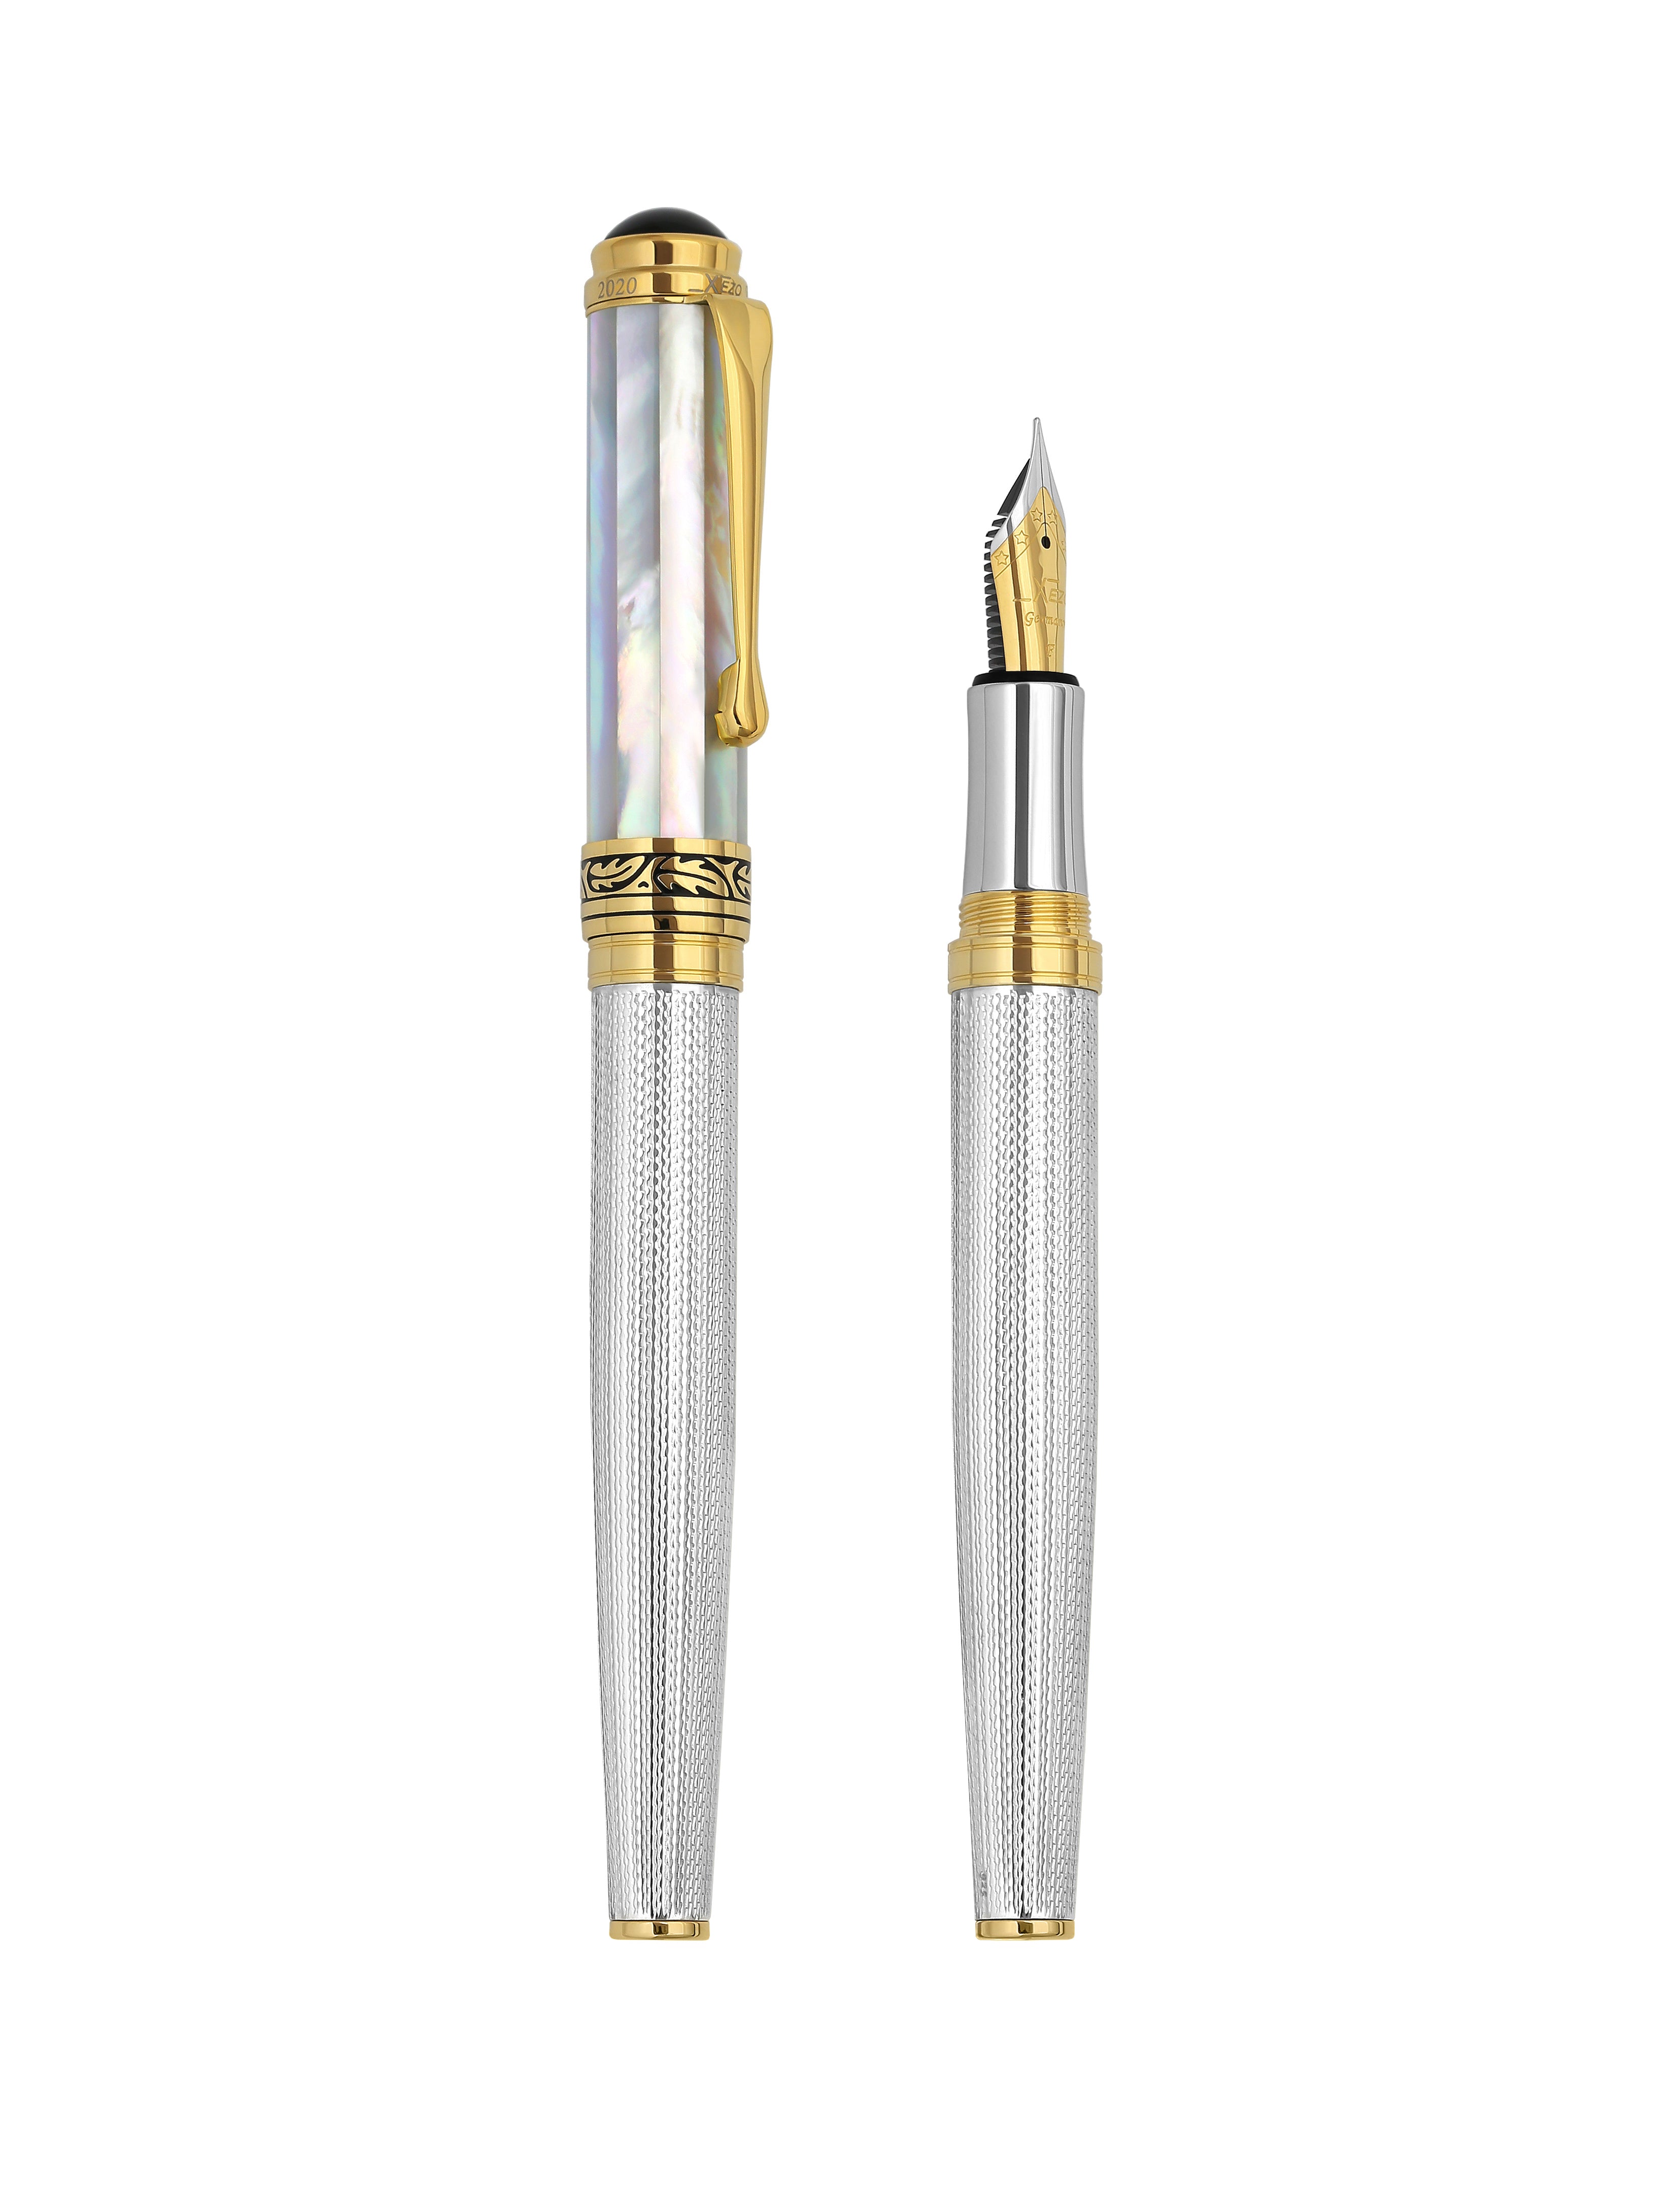 Xezo Maestro 925 White MOP F Maestro® 925 Sterling Silver Fountain Pen Fine Nib) White Mother of Pearl Cap